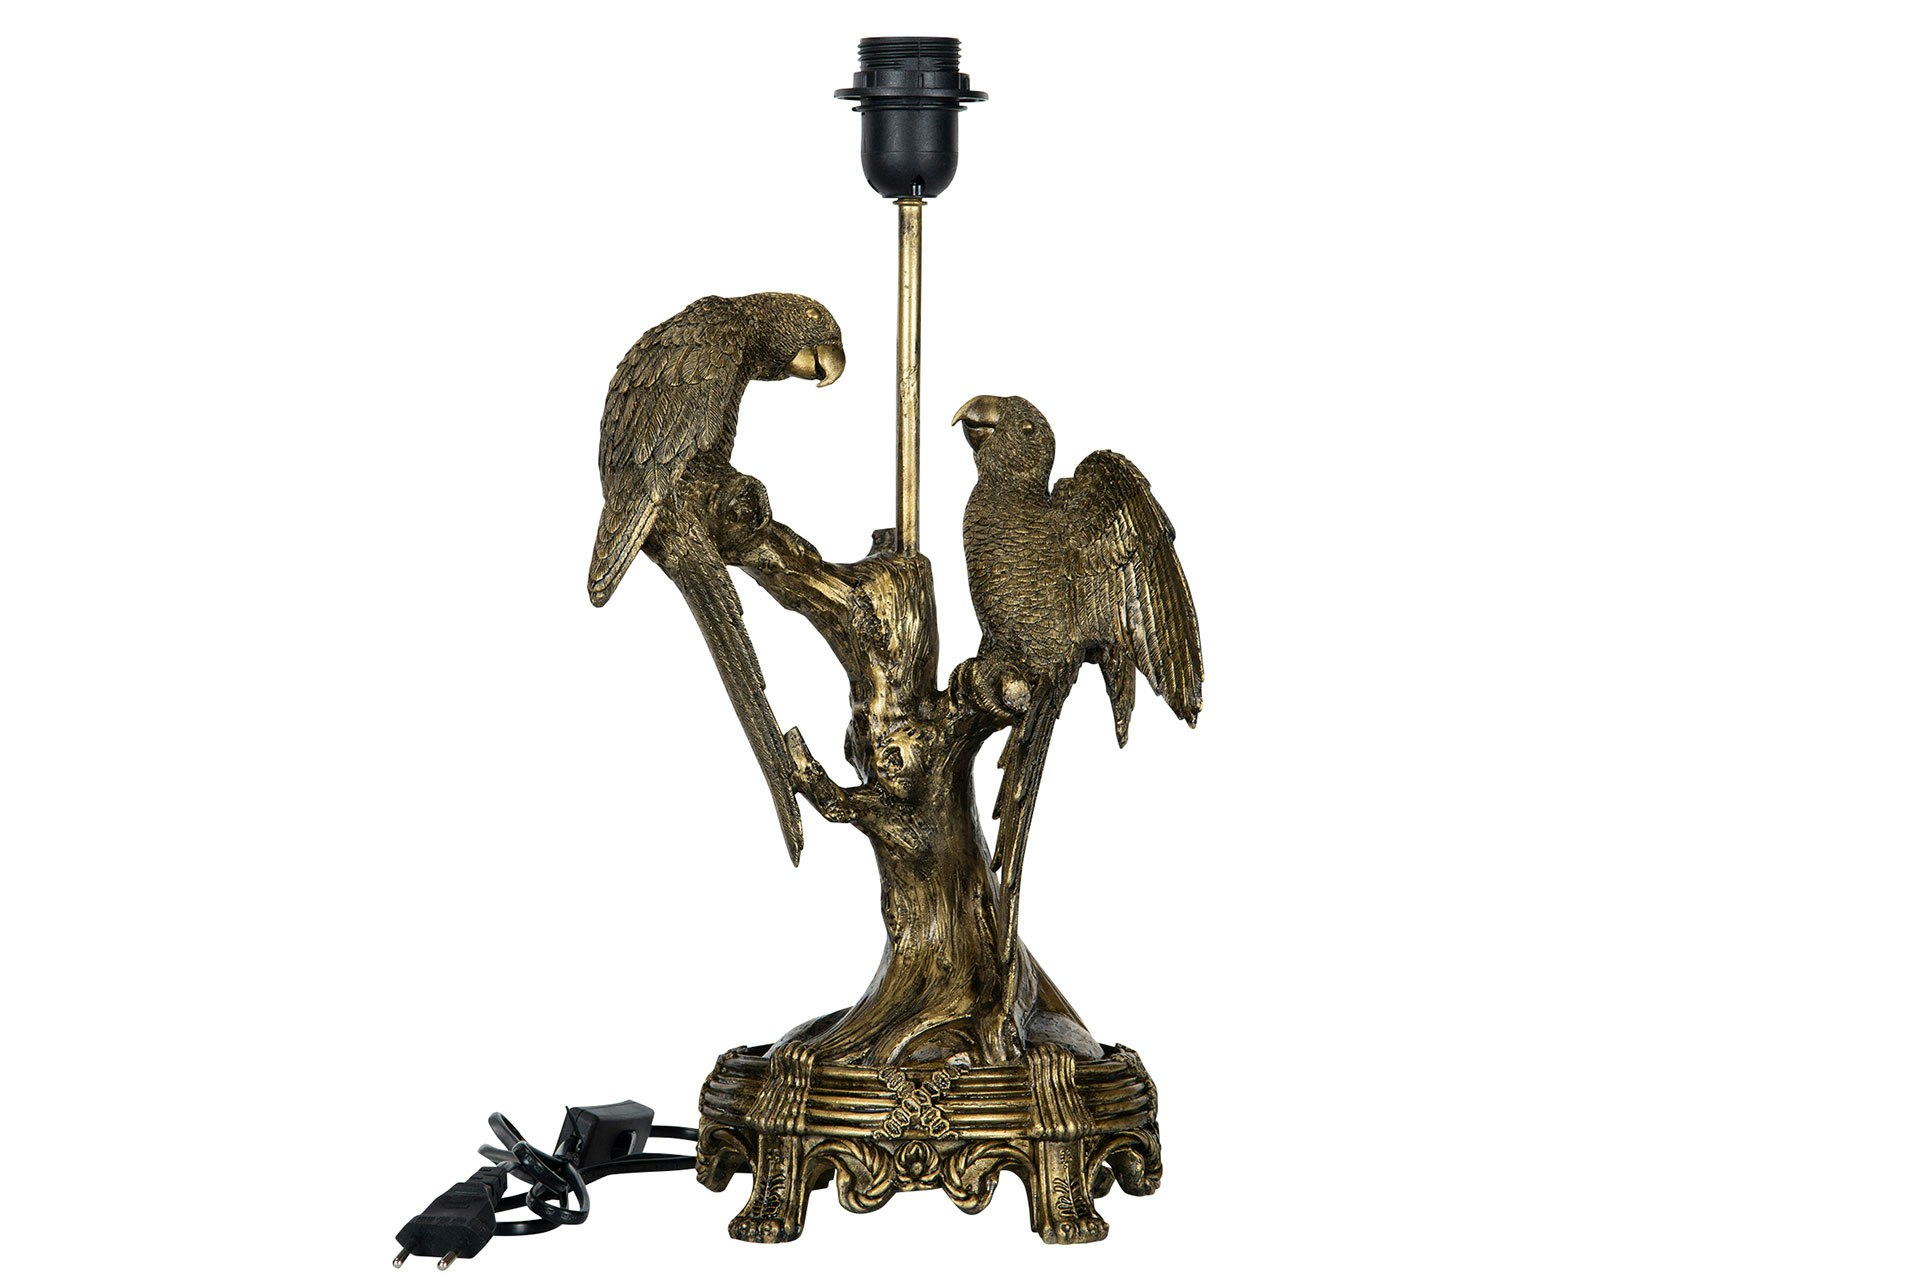 Lampa Papegoja, Belysning, Inredningsdetalj, cool lampa, kolonialstil, Fåglar, Exotiskt, guld